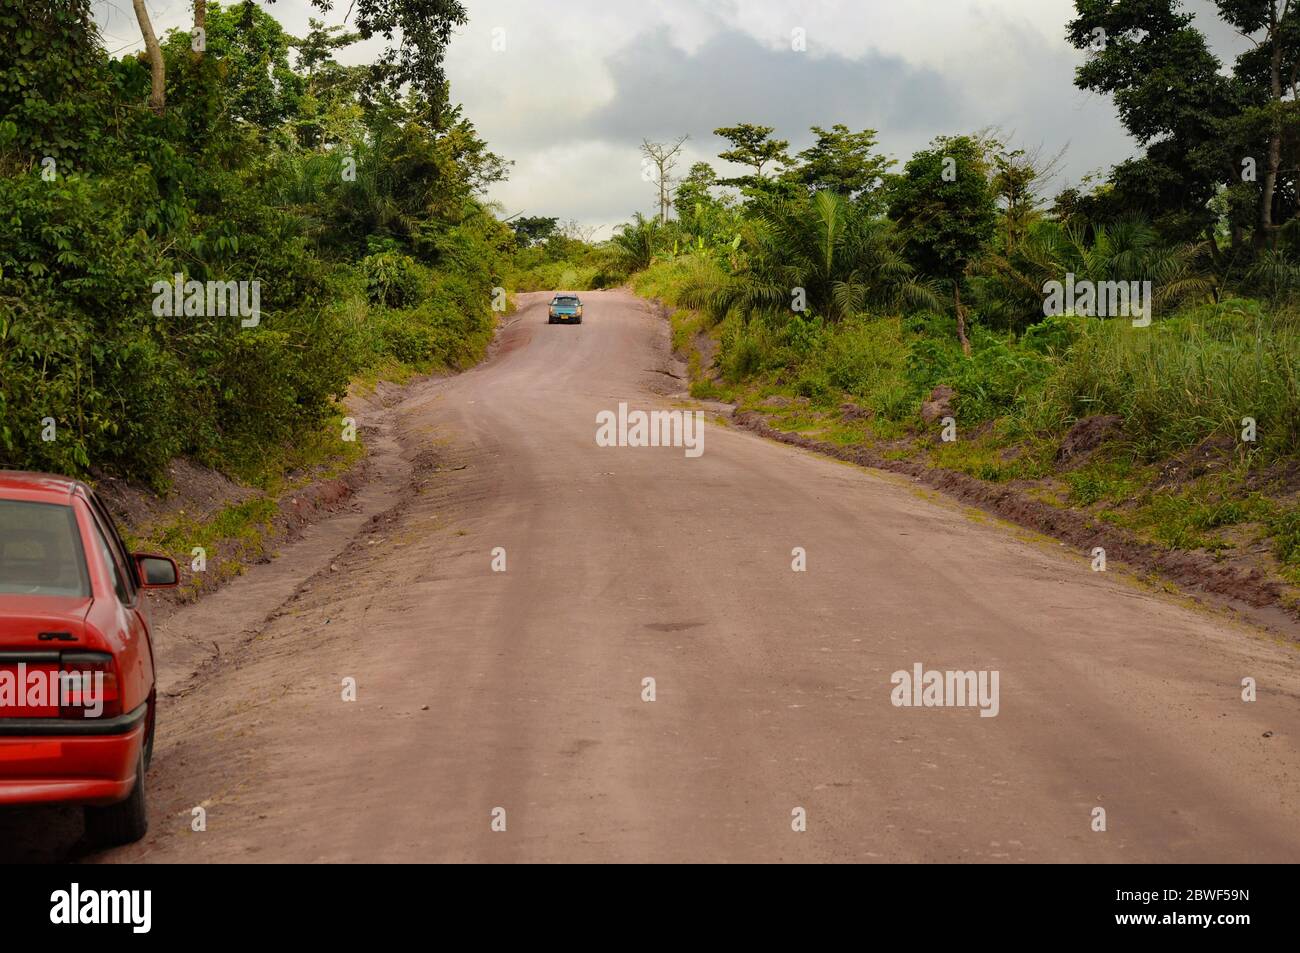 Eine Schotterstraße, die mit einem Auto durch den afrikanischen Regenwald/Dschungel führt - in der Nähe von Accra, Ghana, Afrika Stockfoto